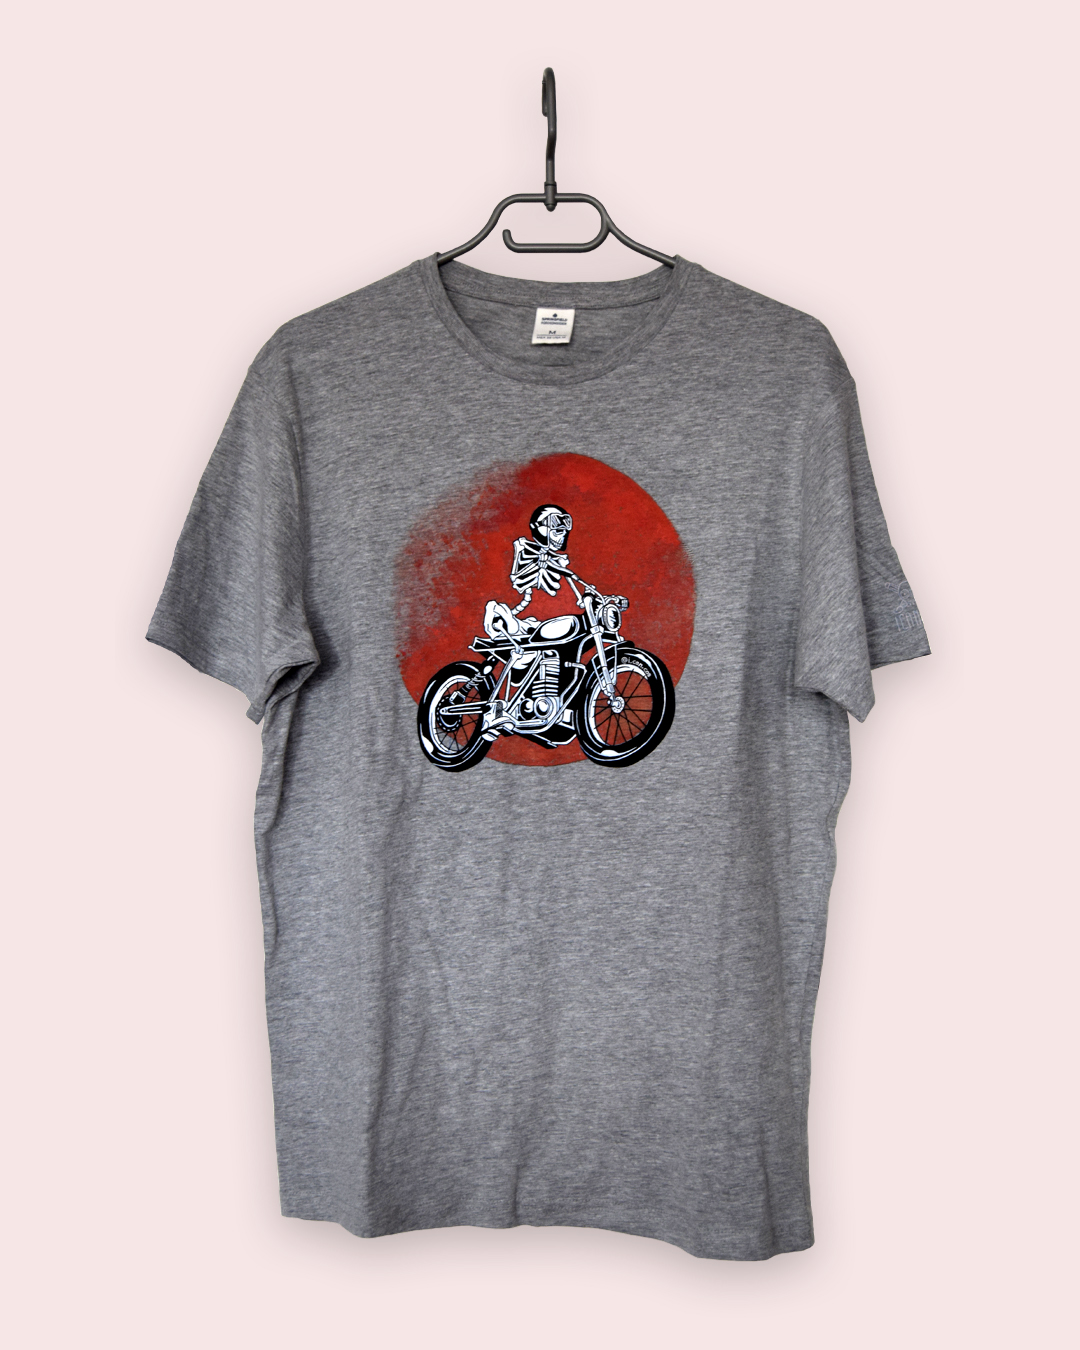 Camiseta con moto, resultado final